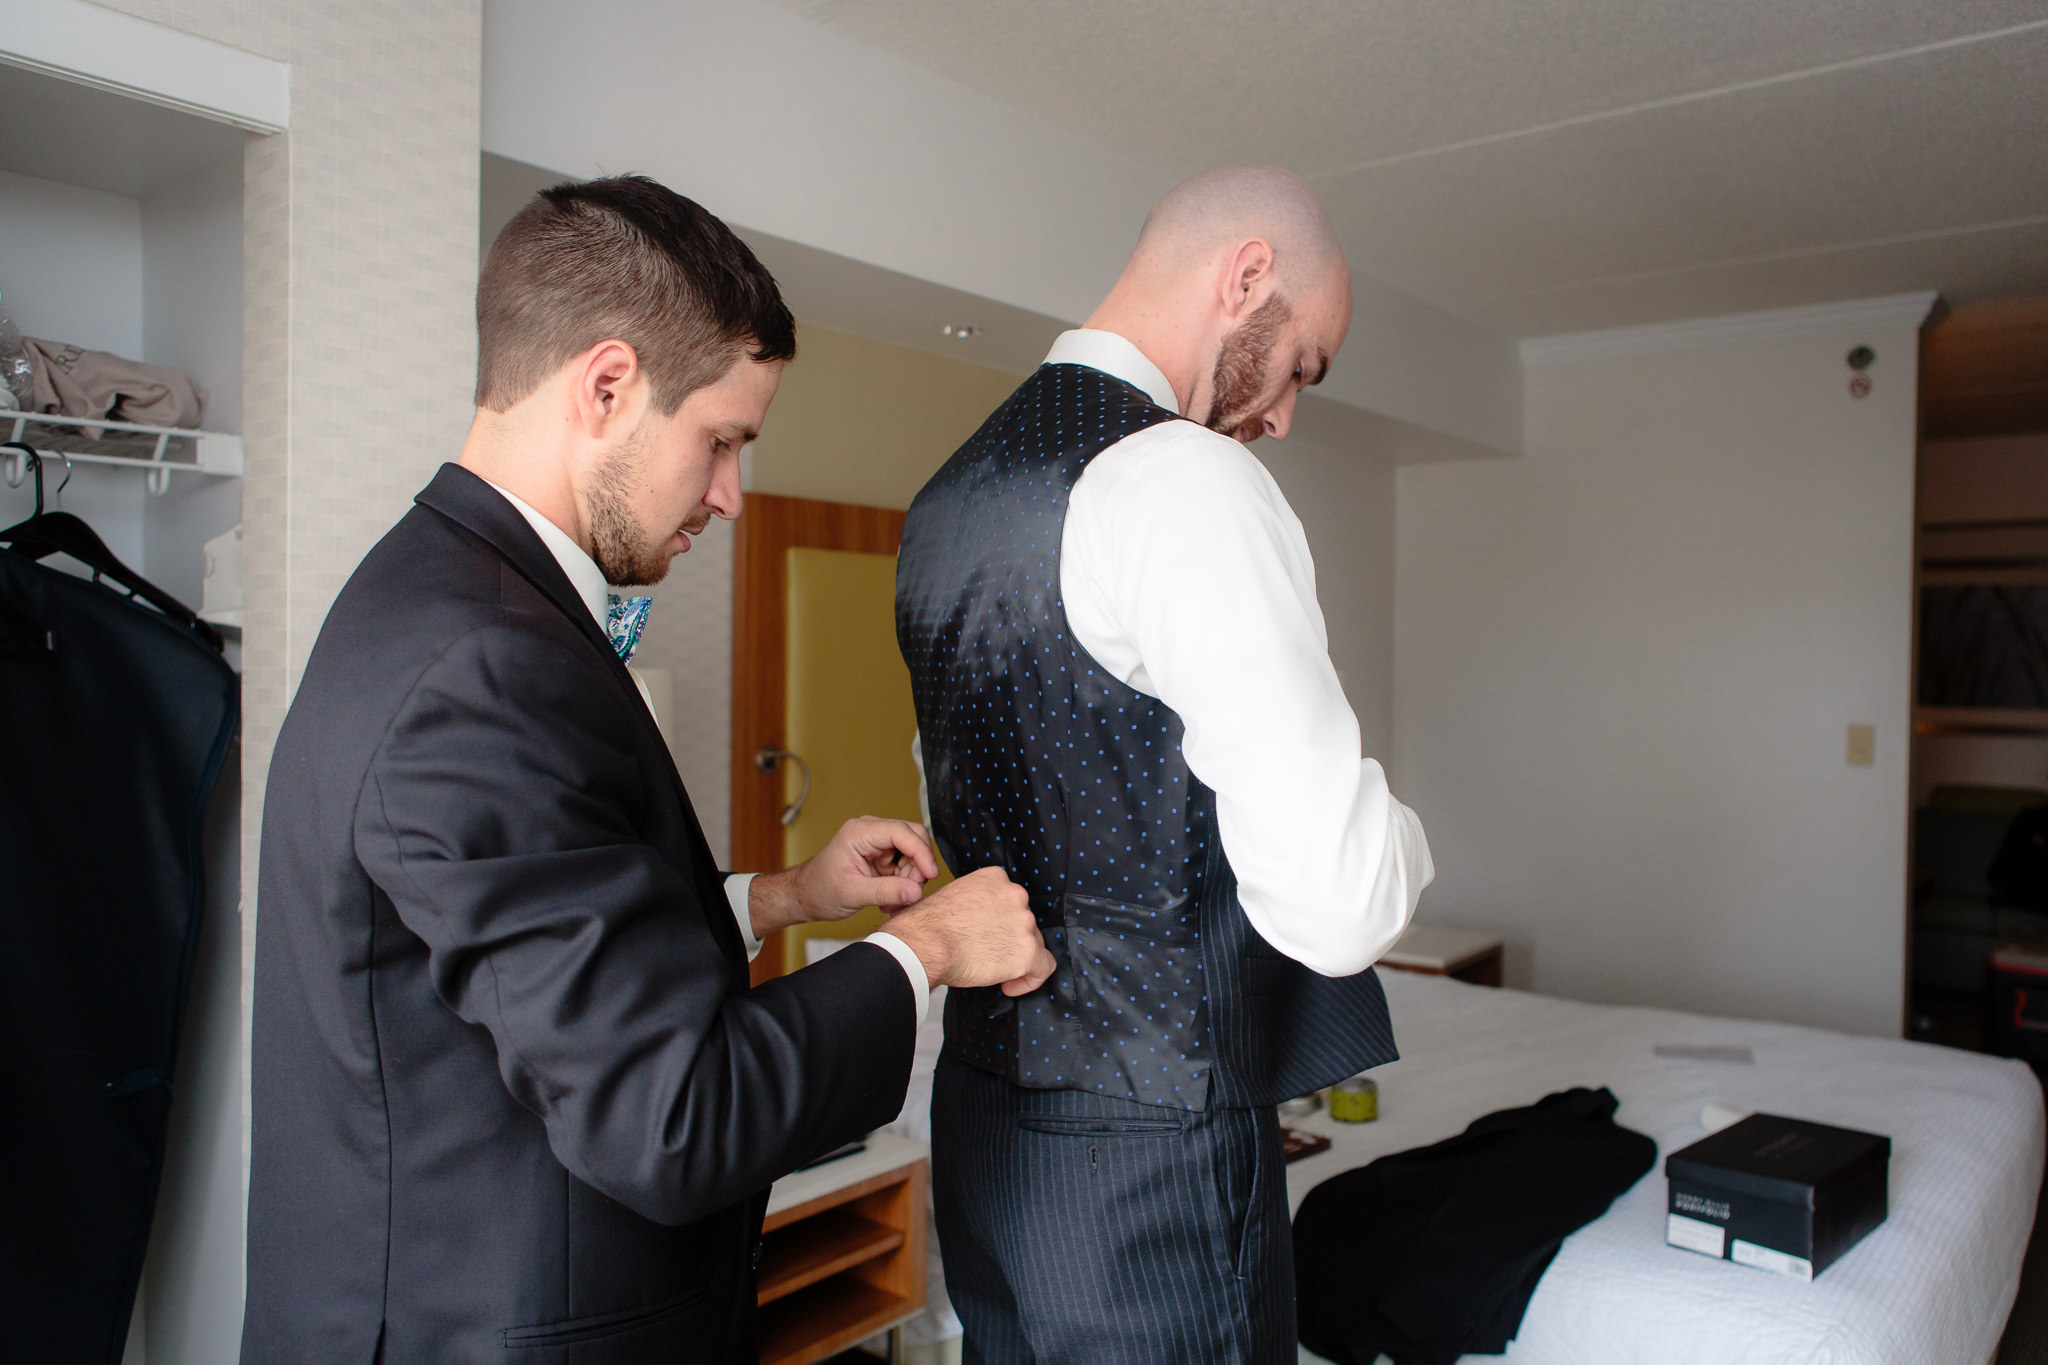 Groomsmen helps the groom get dressed before his National Aviary wedding